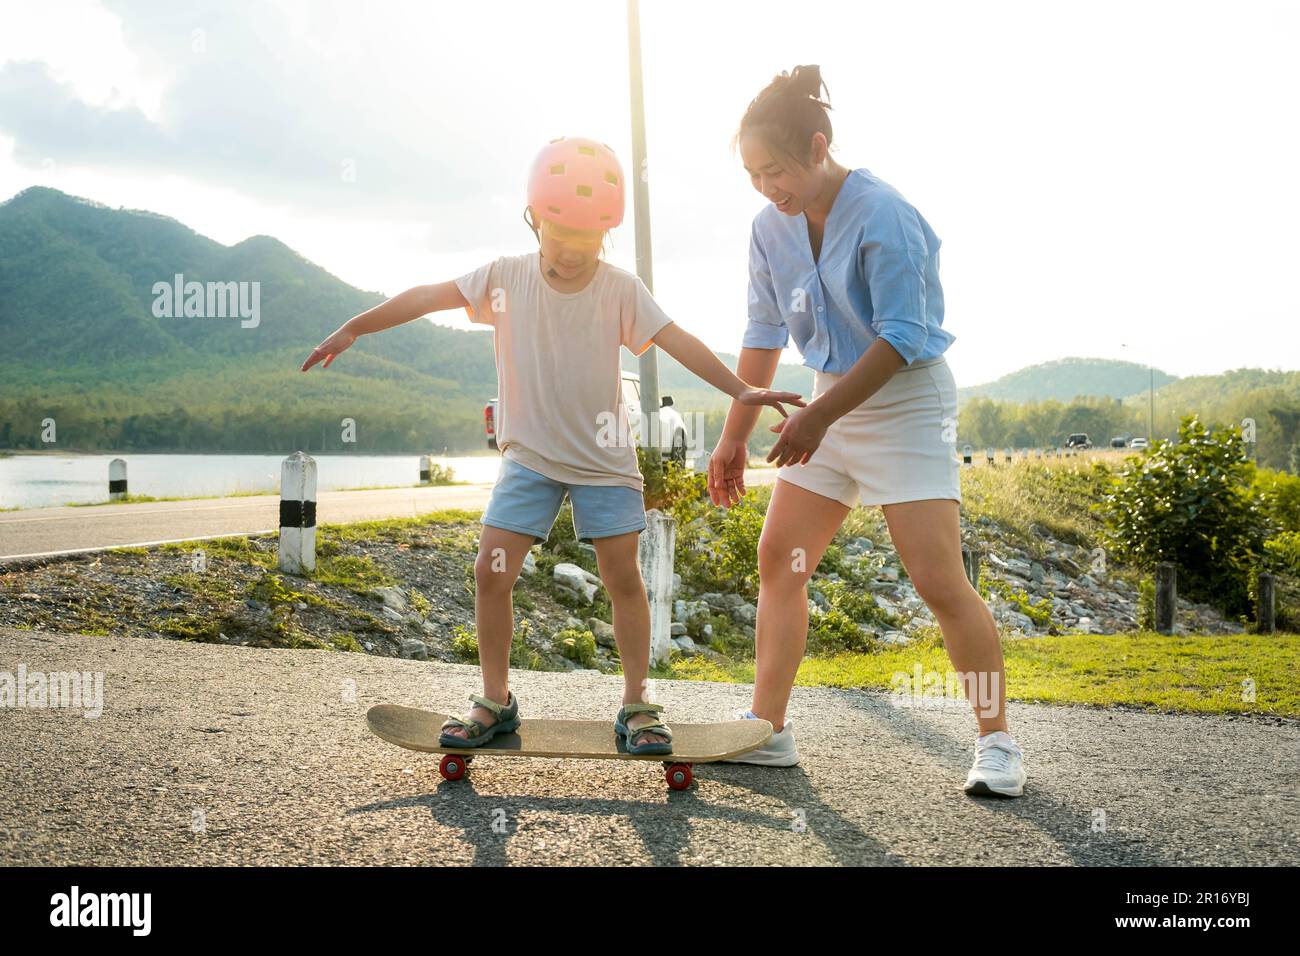 Madre enseñando a su hija a patinar en el parque. Niño montando tabla de skate. Deportes saludables y actividades al aire libre para niños en edad escolar Foto de stock